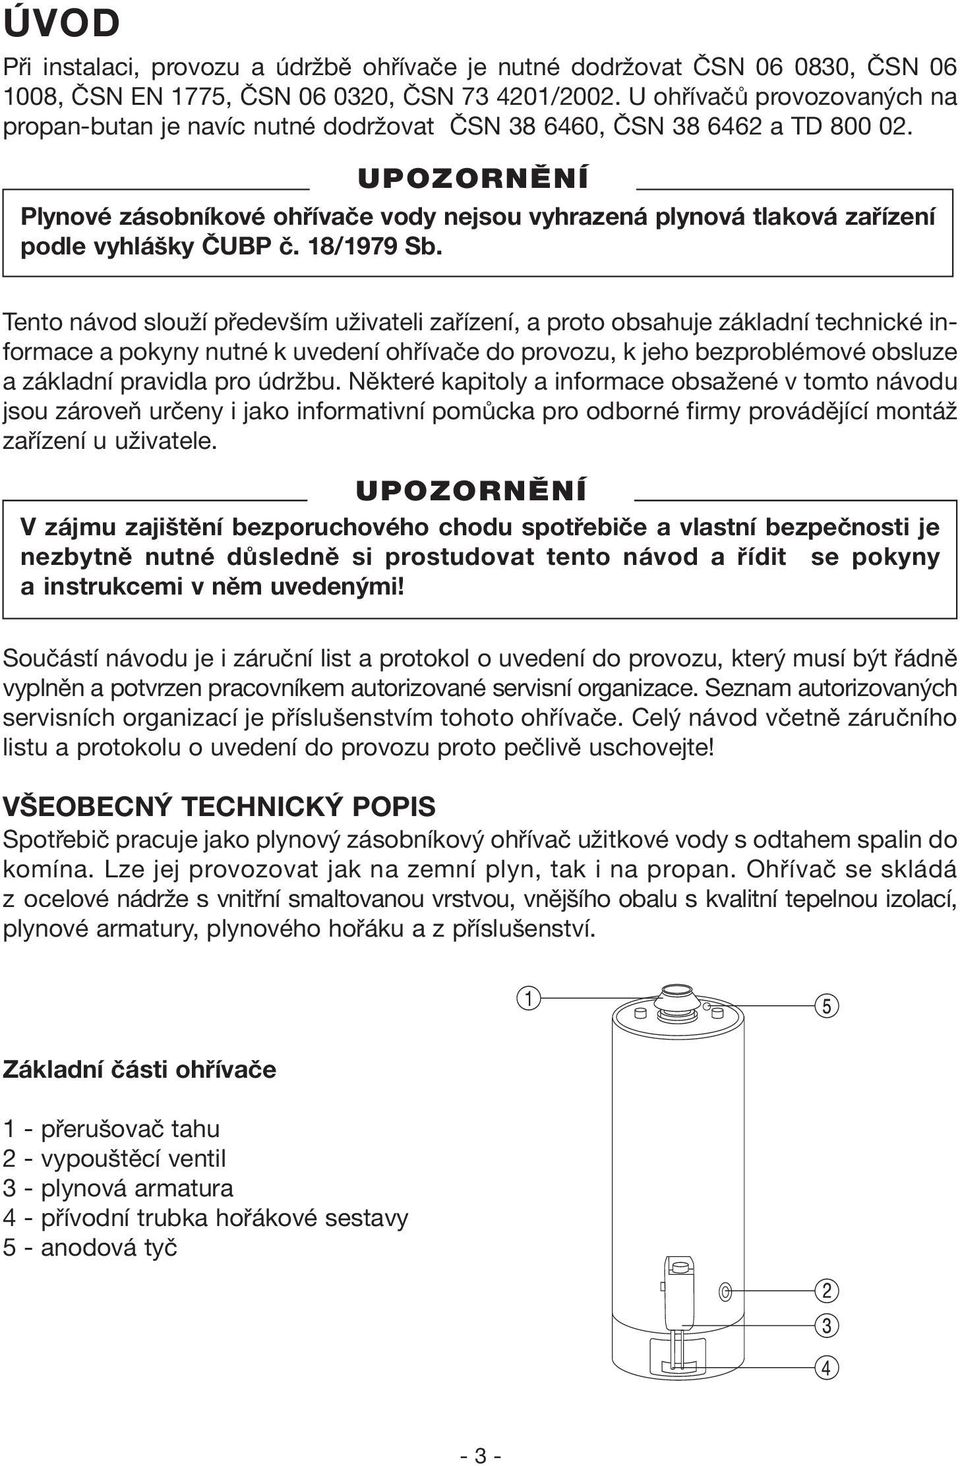 Plynové zásobníkové ohřívače vody nejsou vyhrazená plynová tlaková zařízení podle vyhlášky ČUBP č. 18/1979 Sb.